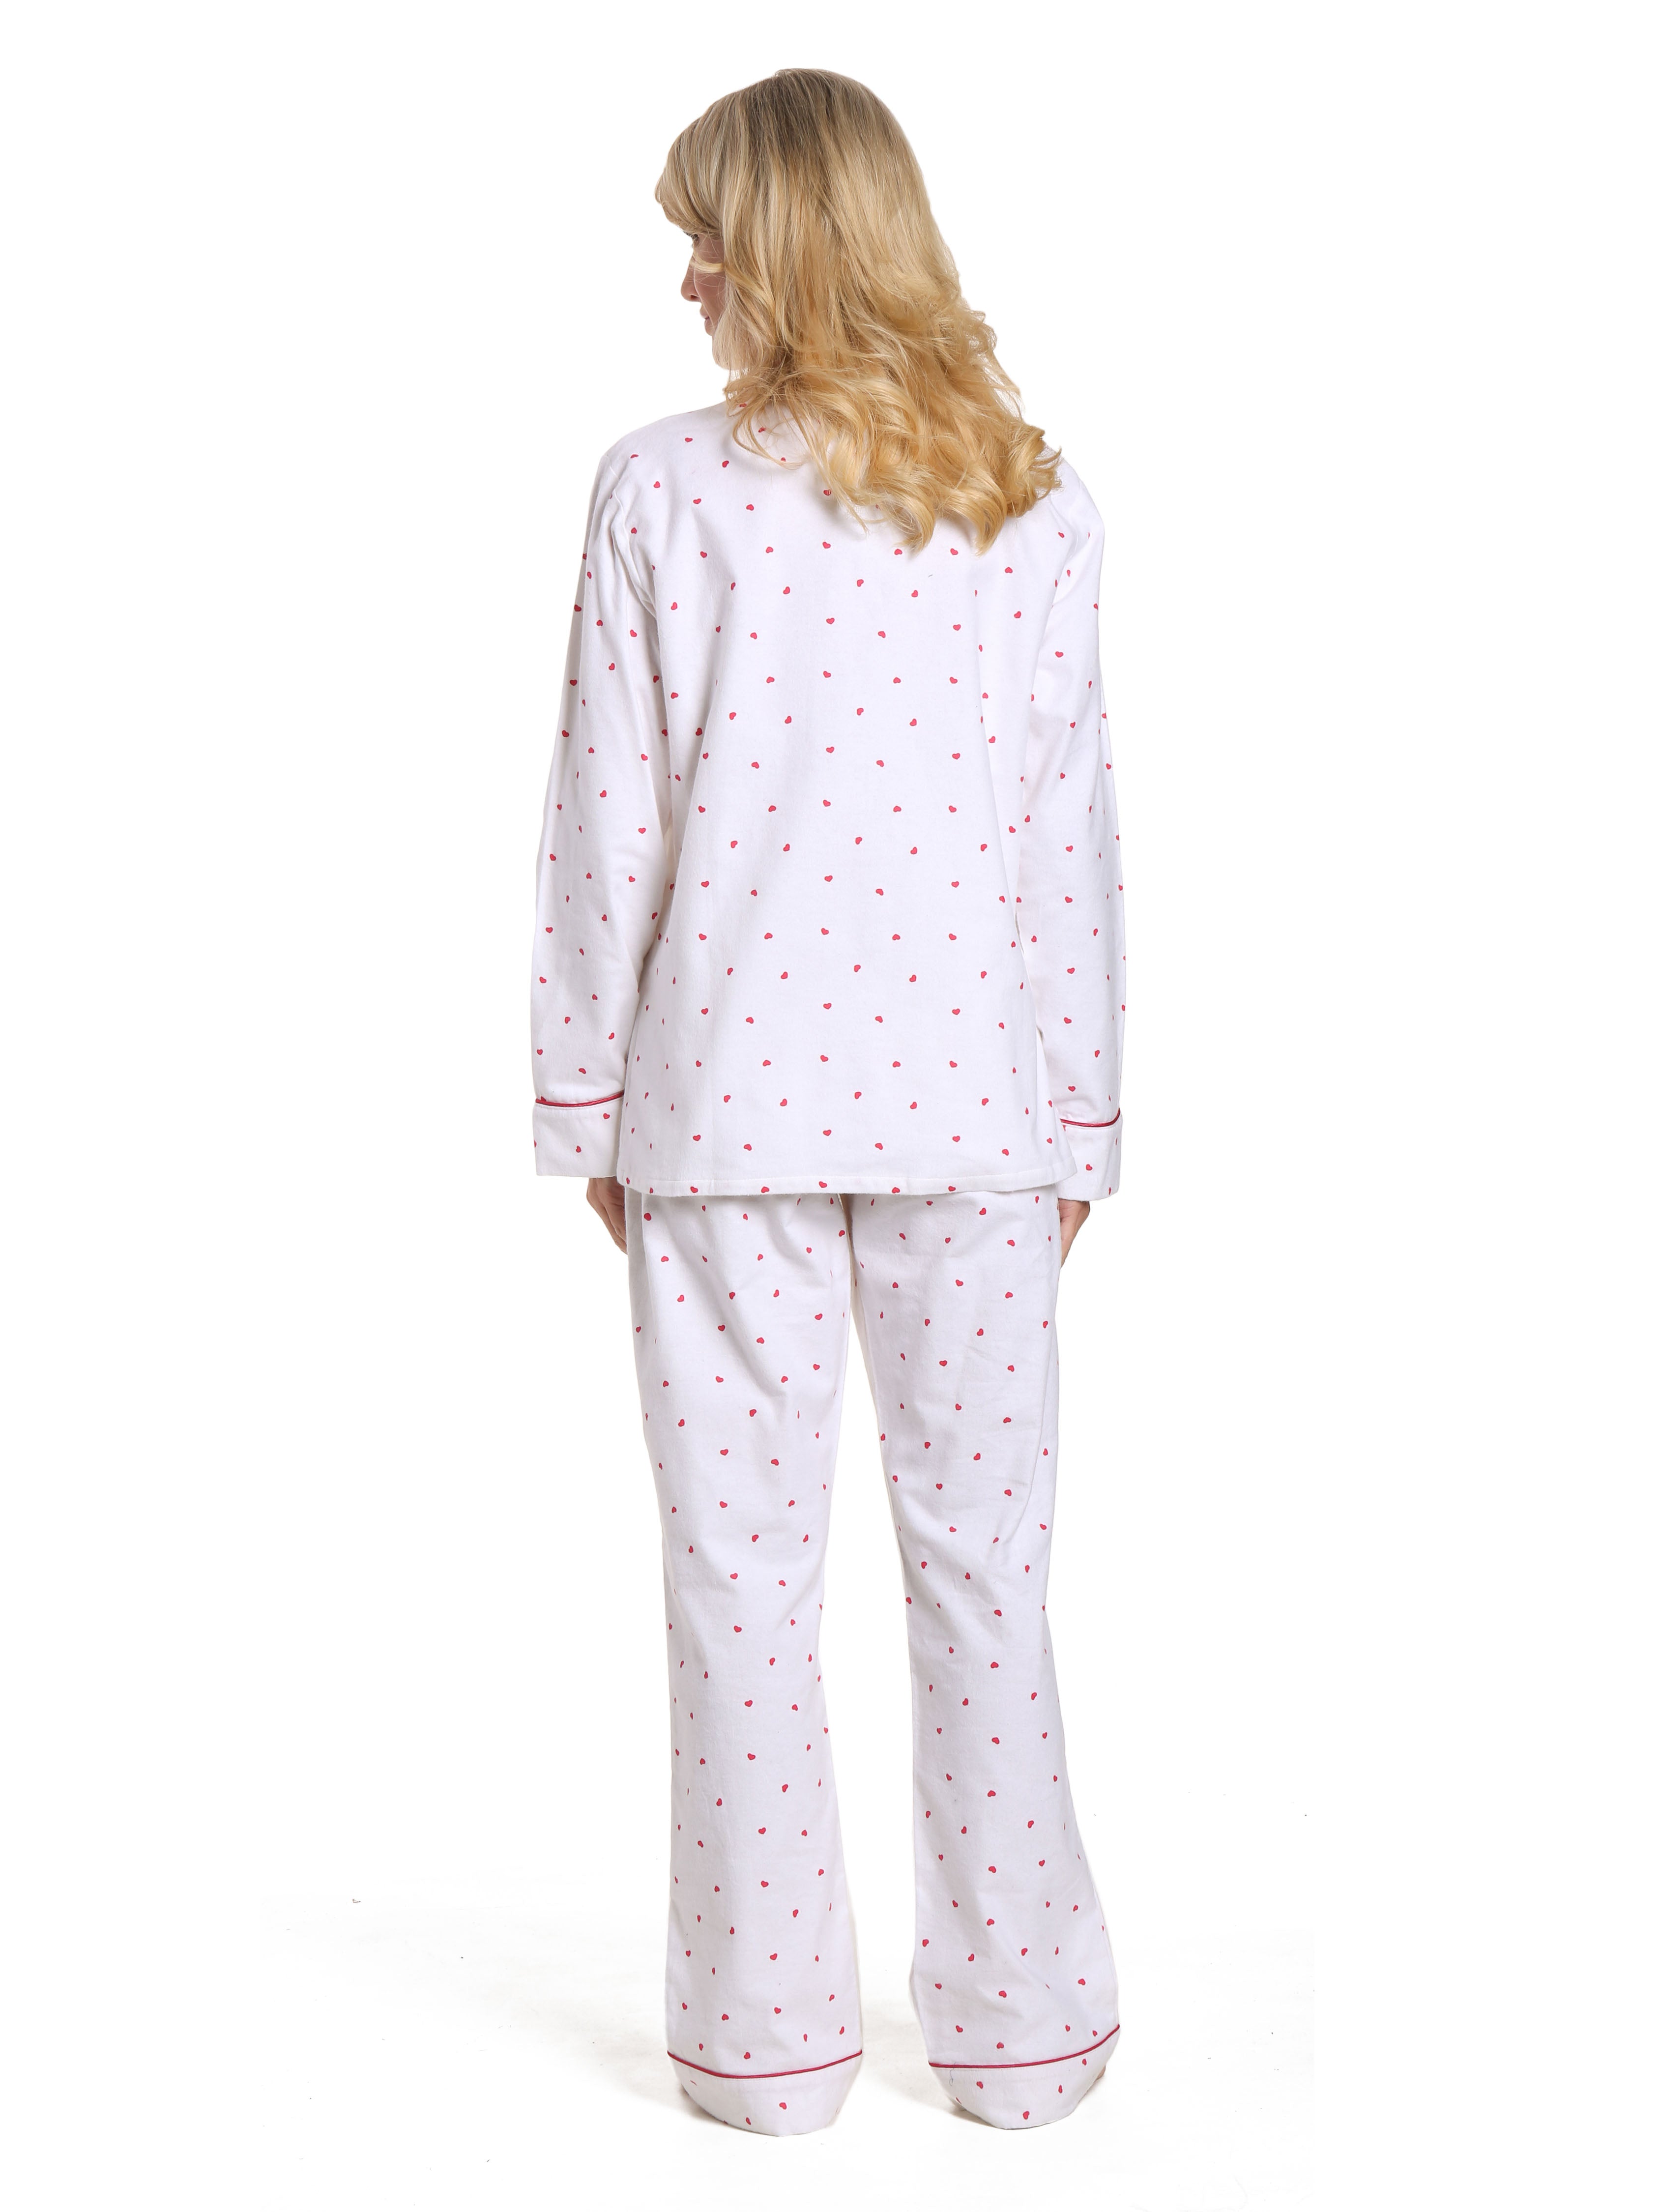 Women's 100% Cotton Flannel Pajama Sleepwear Set - Little Hearts